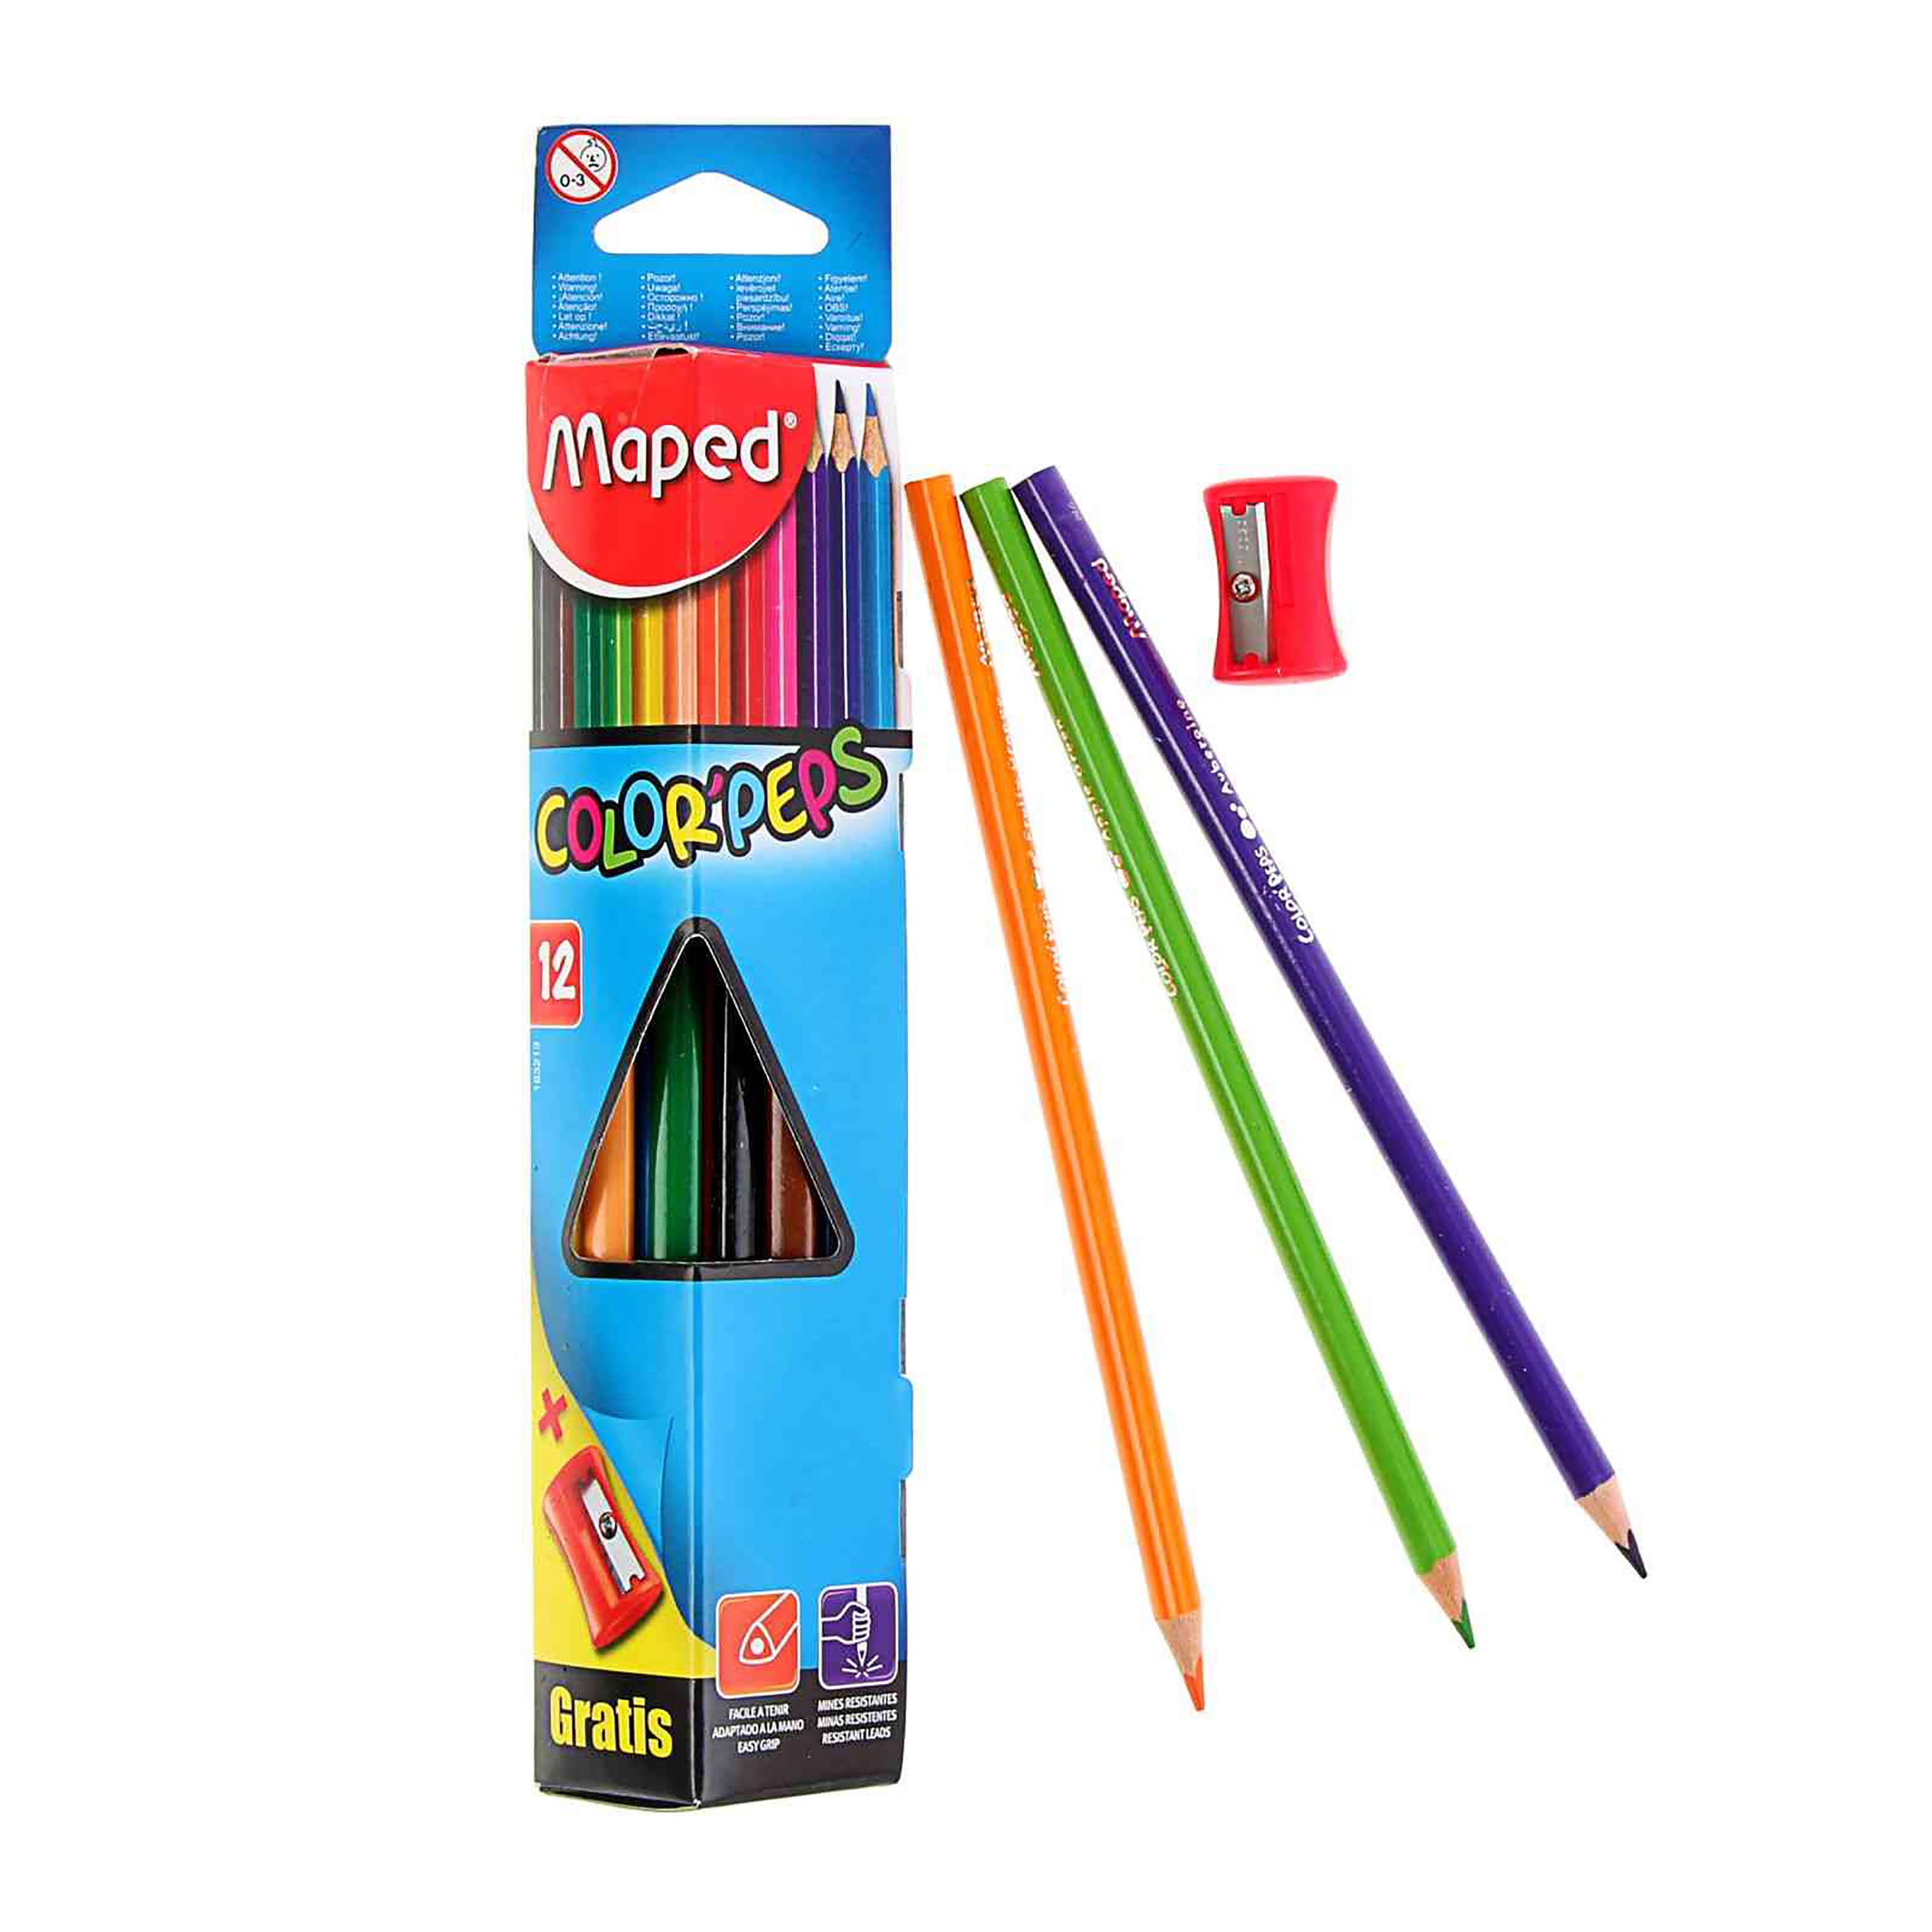 12 lápices de colores, caja de 24 unidades